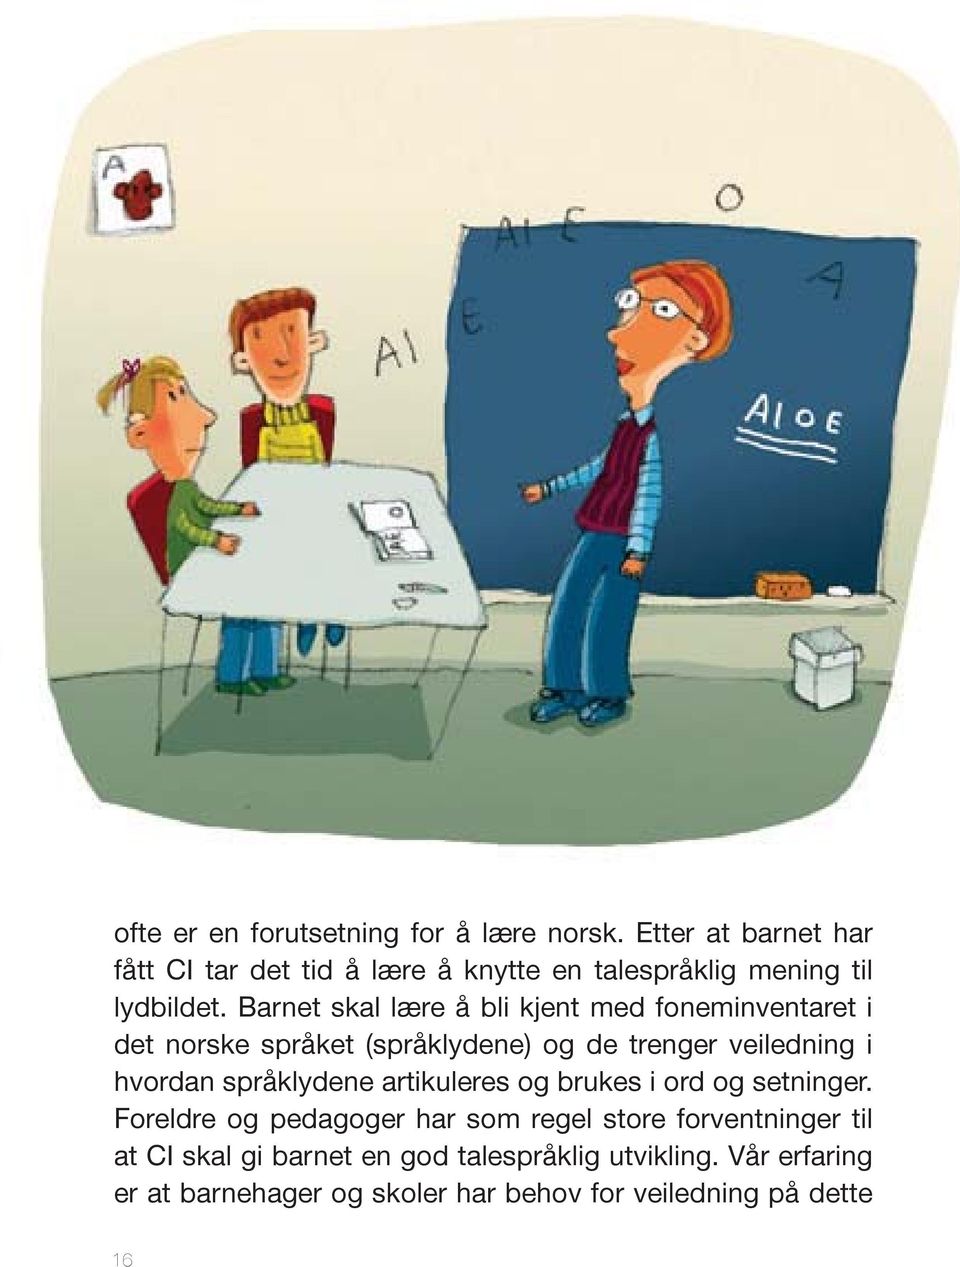 Barnet skal lære å bli kjent med foneminventaret i det norske språket (språklydene) og de trenger veiledning i hvordan